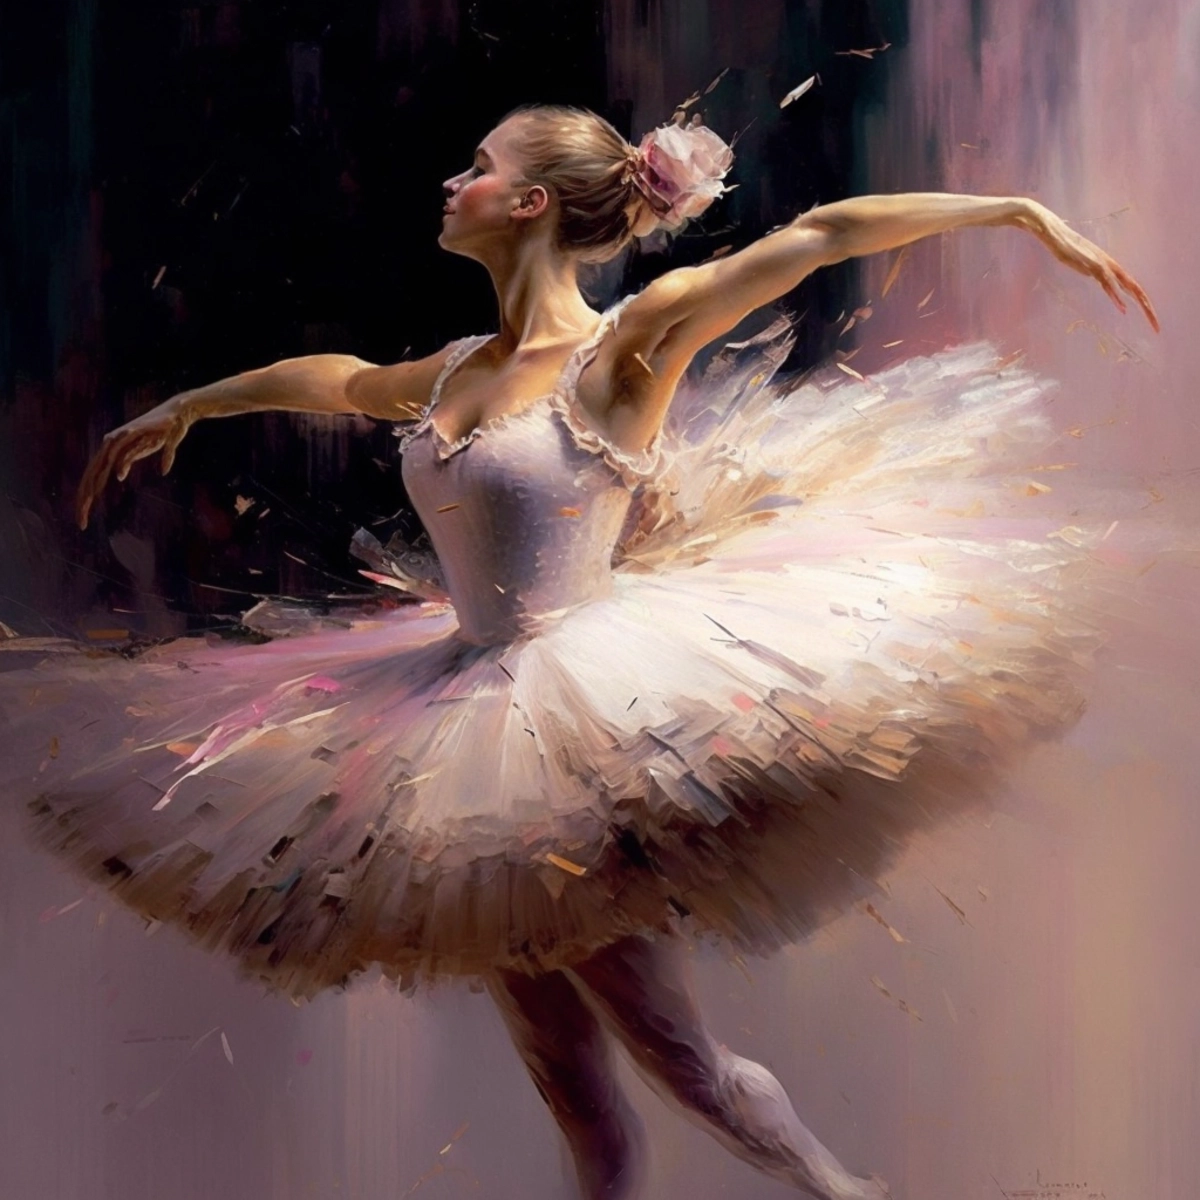 Eine elegante Ballerina in anmutiger Tanzpose